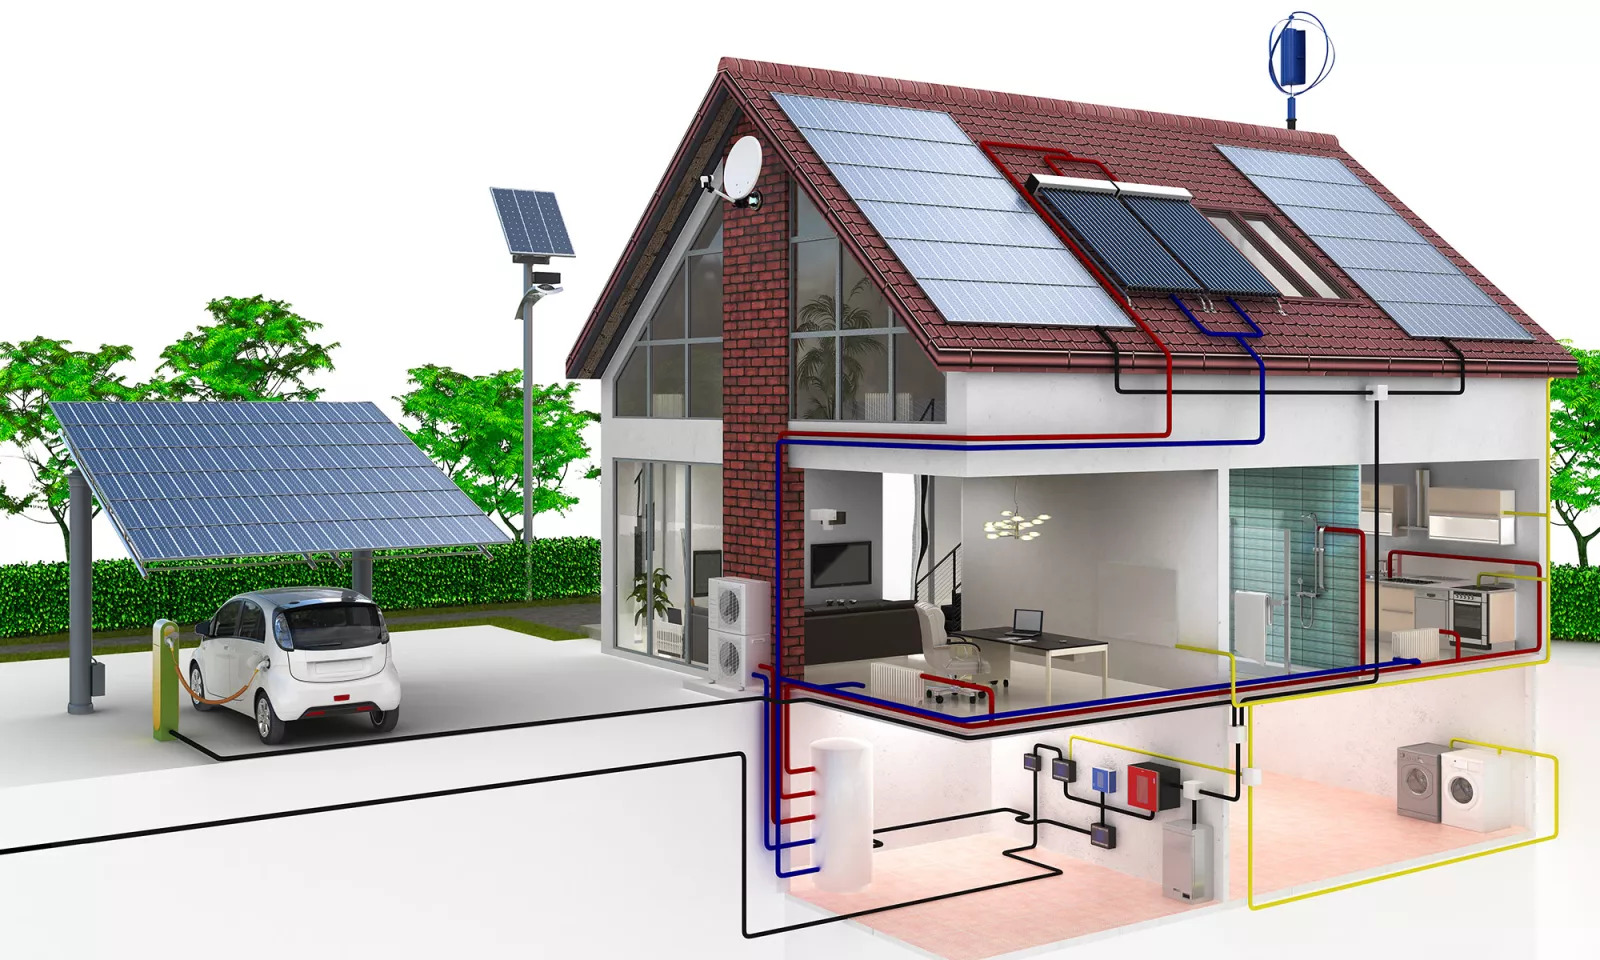 Elektrofahrzeuge, Solaranlagen und saubere Energie